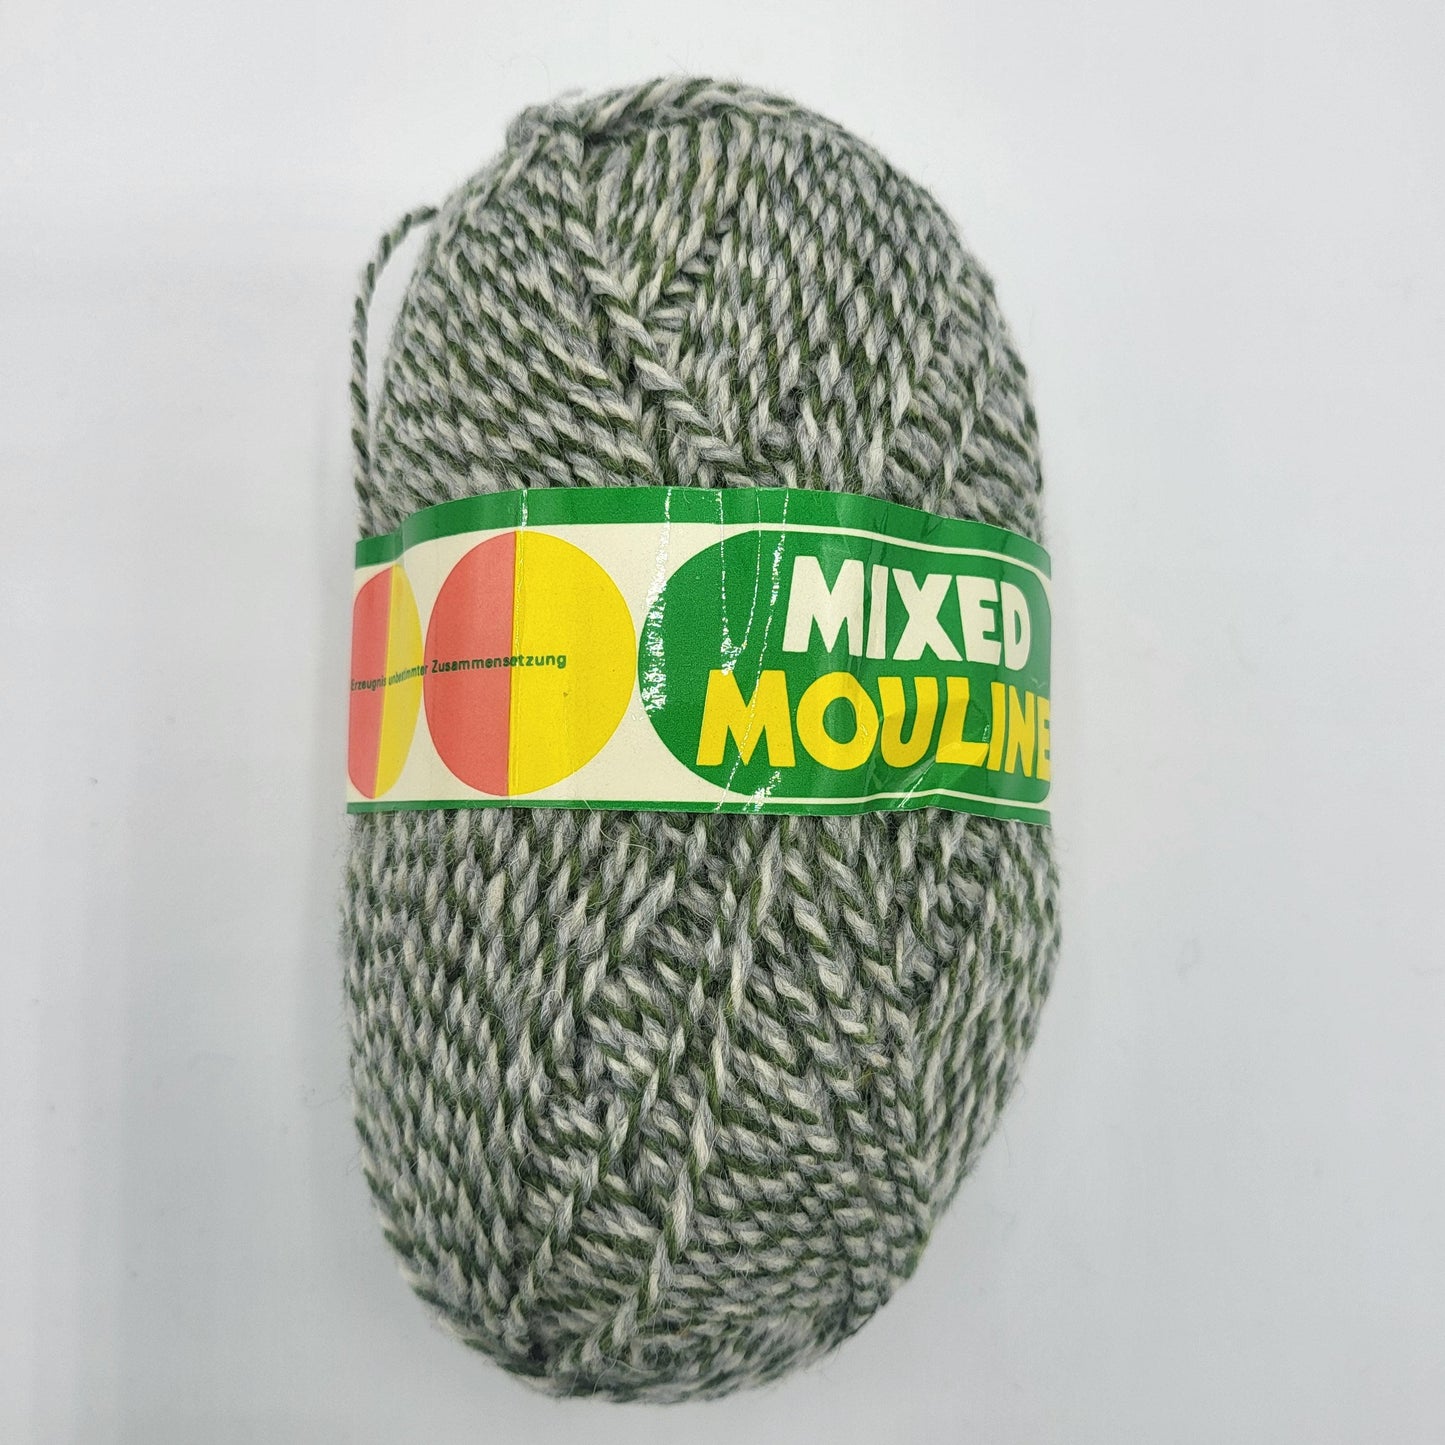 Mixed Mouline Garn 50gr Strickgarn in verschiedenen Farben - EkoDeko.de